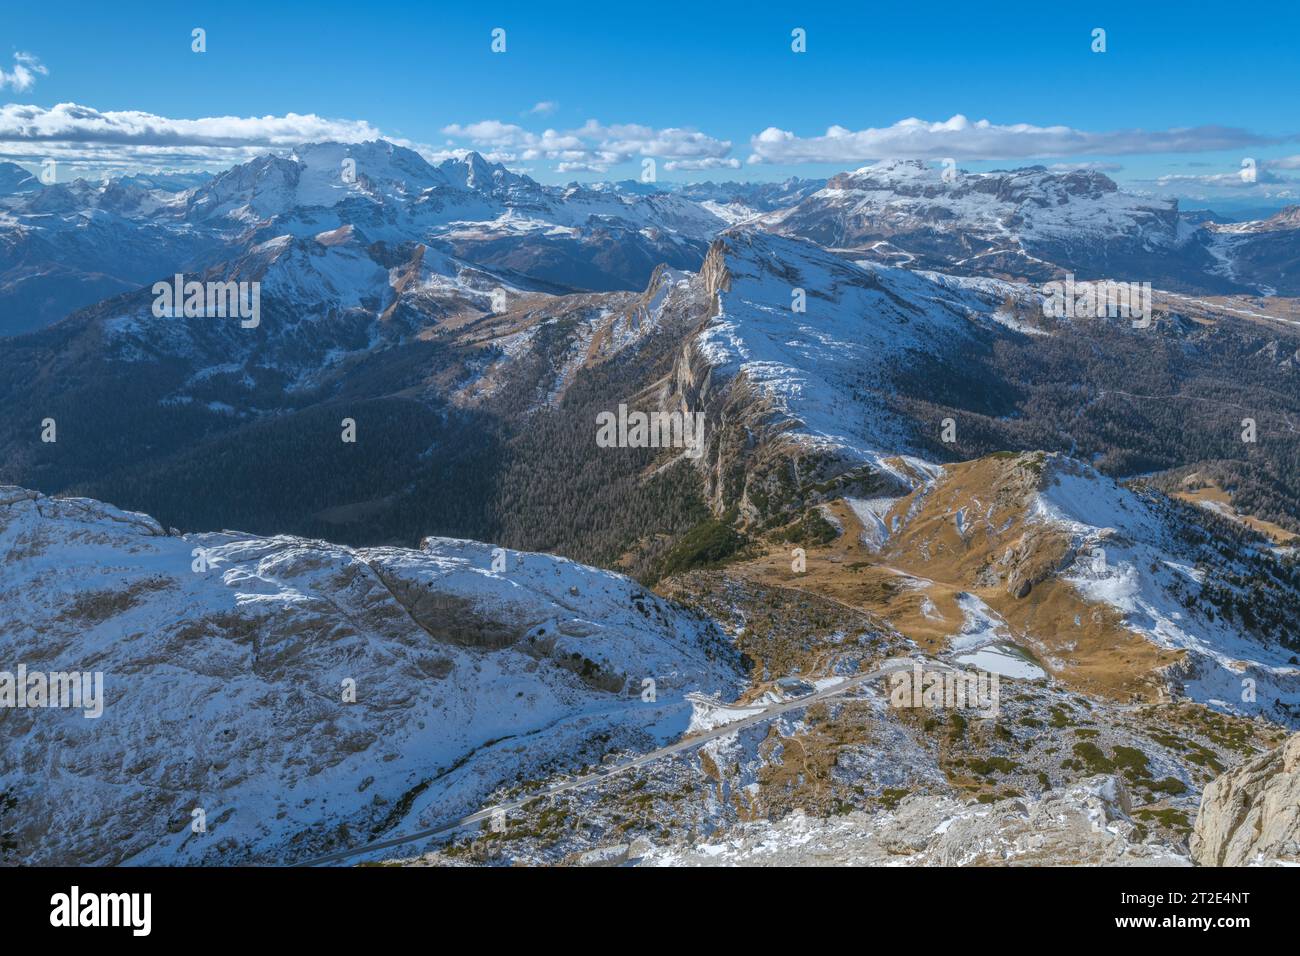 Panoramablick vom Gipfel des Lagazuoi in den italienischen Dolomiten. Schneebedeckte Berglandschaft mit Blick auf den berühmten Marmolada-Berg. Stockfoto